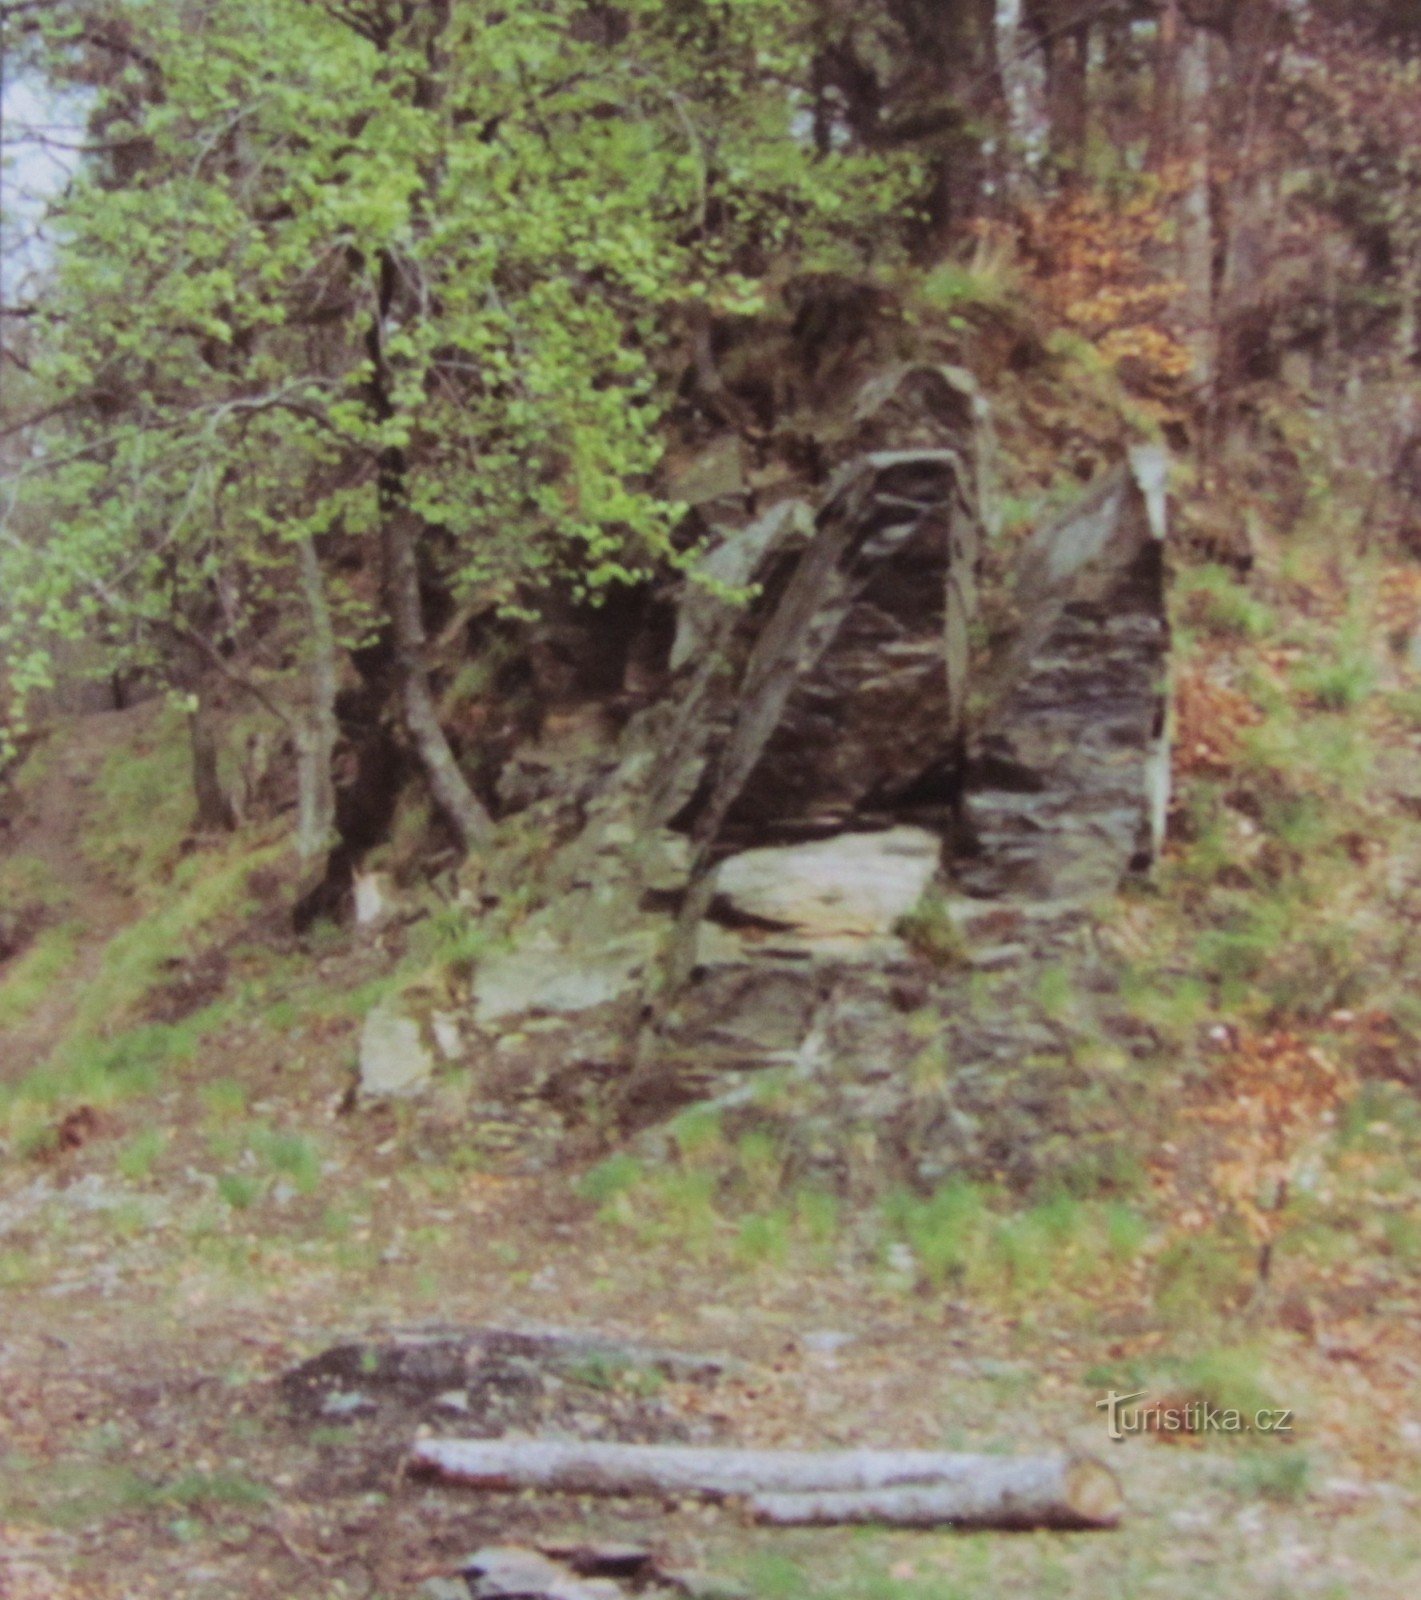 From Hranice through Potštátská skály to the ruins of Drahotuš Castle (retro 1997)